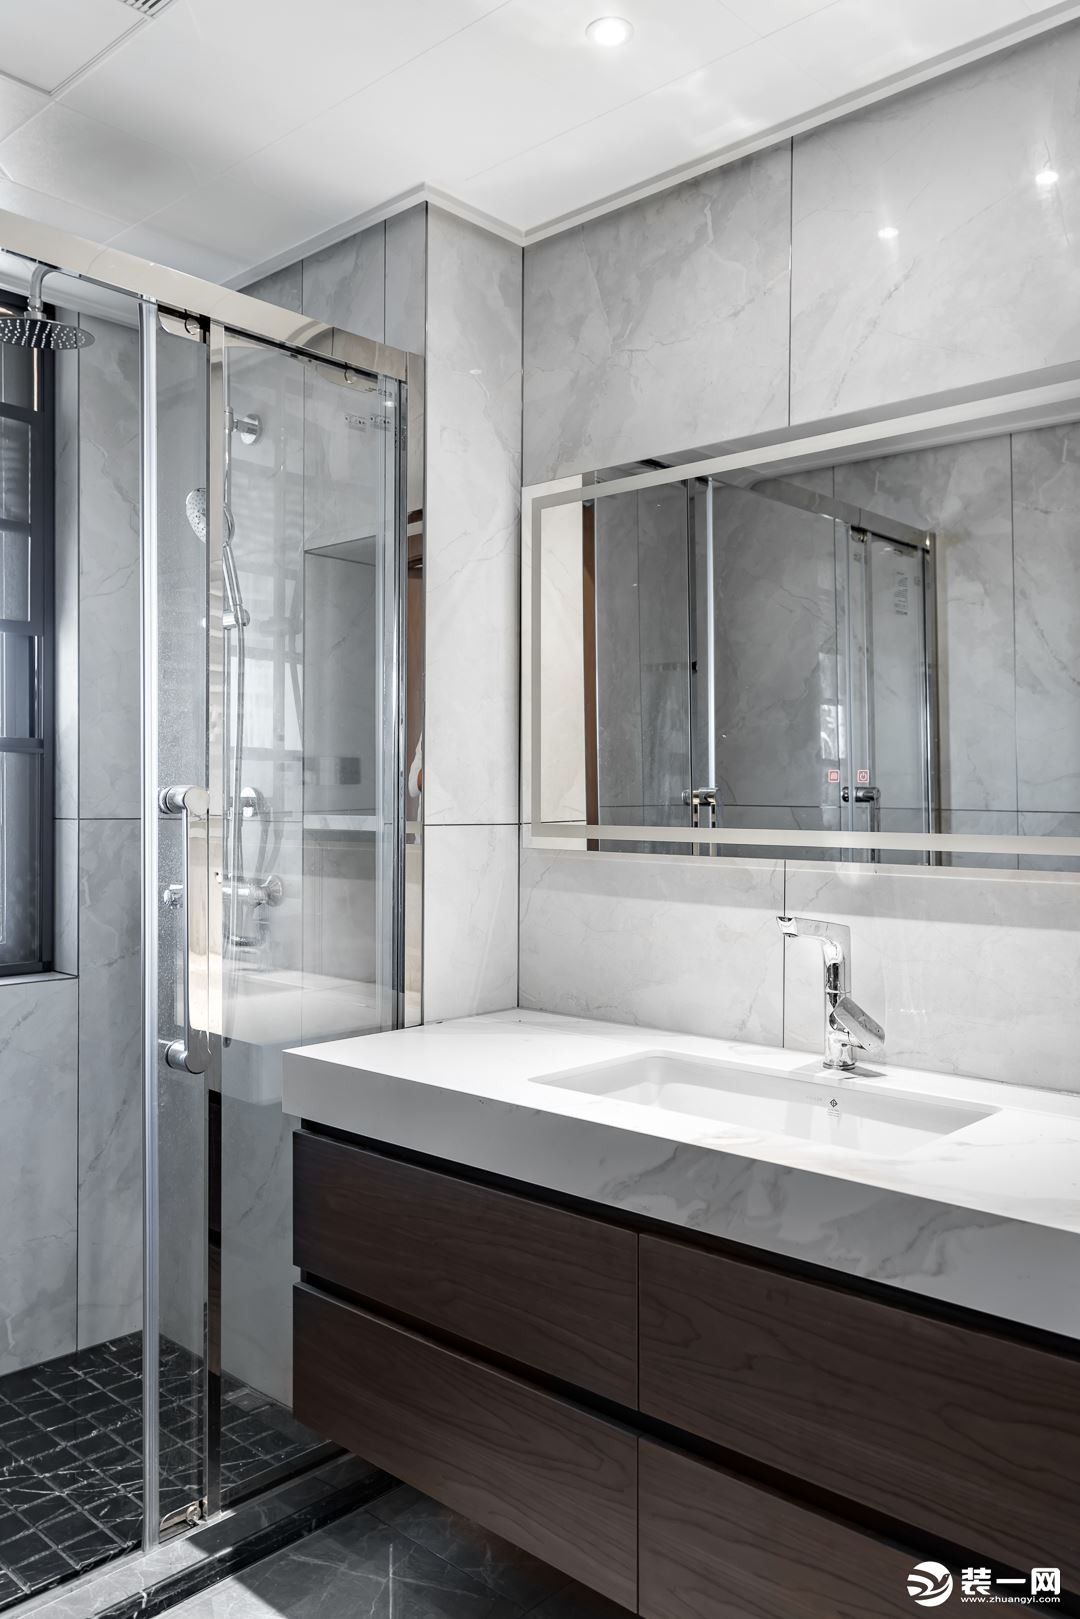 淋浴房的银色金属边框利落有型， 让空间多了一份现代质感。